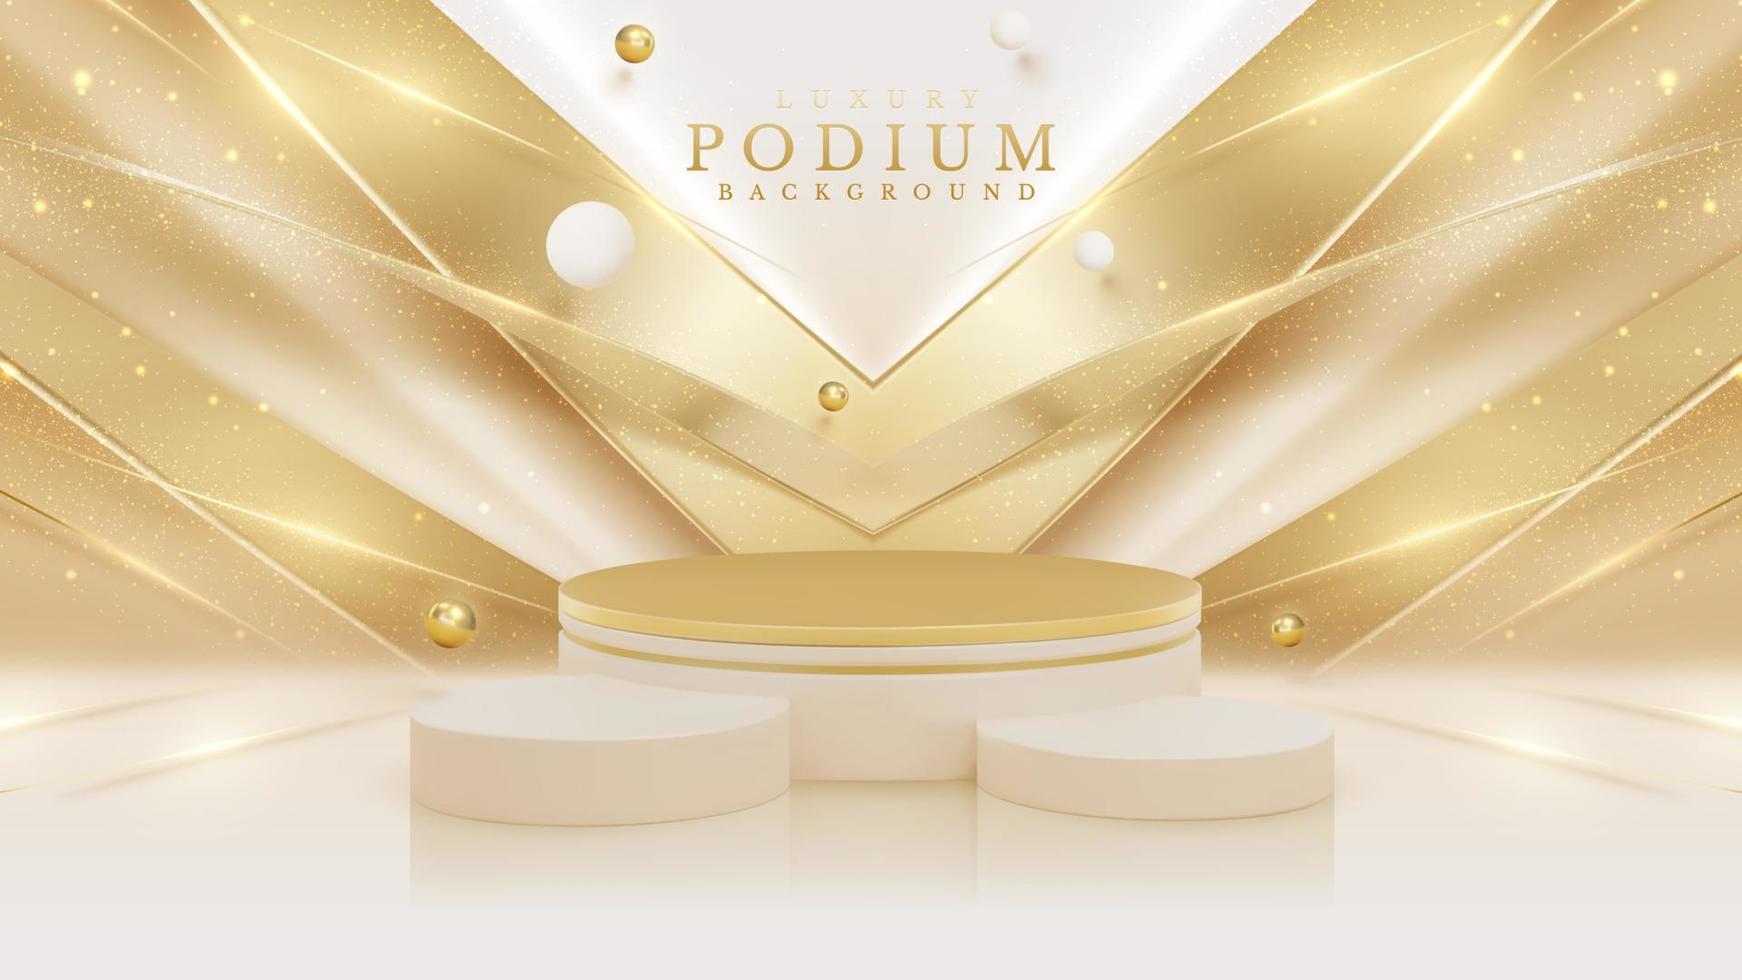 Product Scherm podium met gouden kromme lijn element en bal decoratie en schitteren licht effect. vector illustratie.